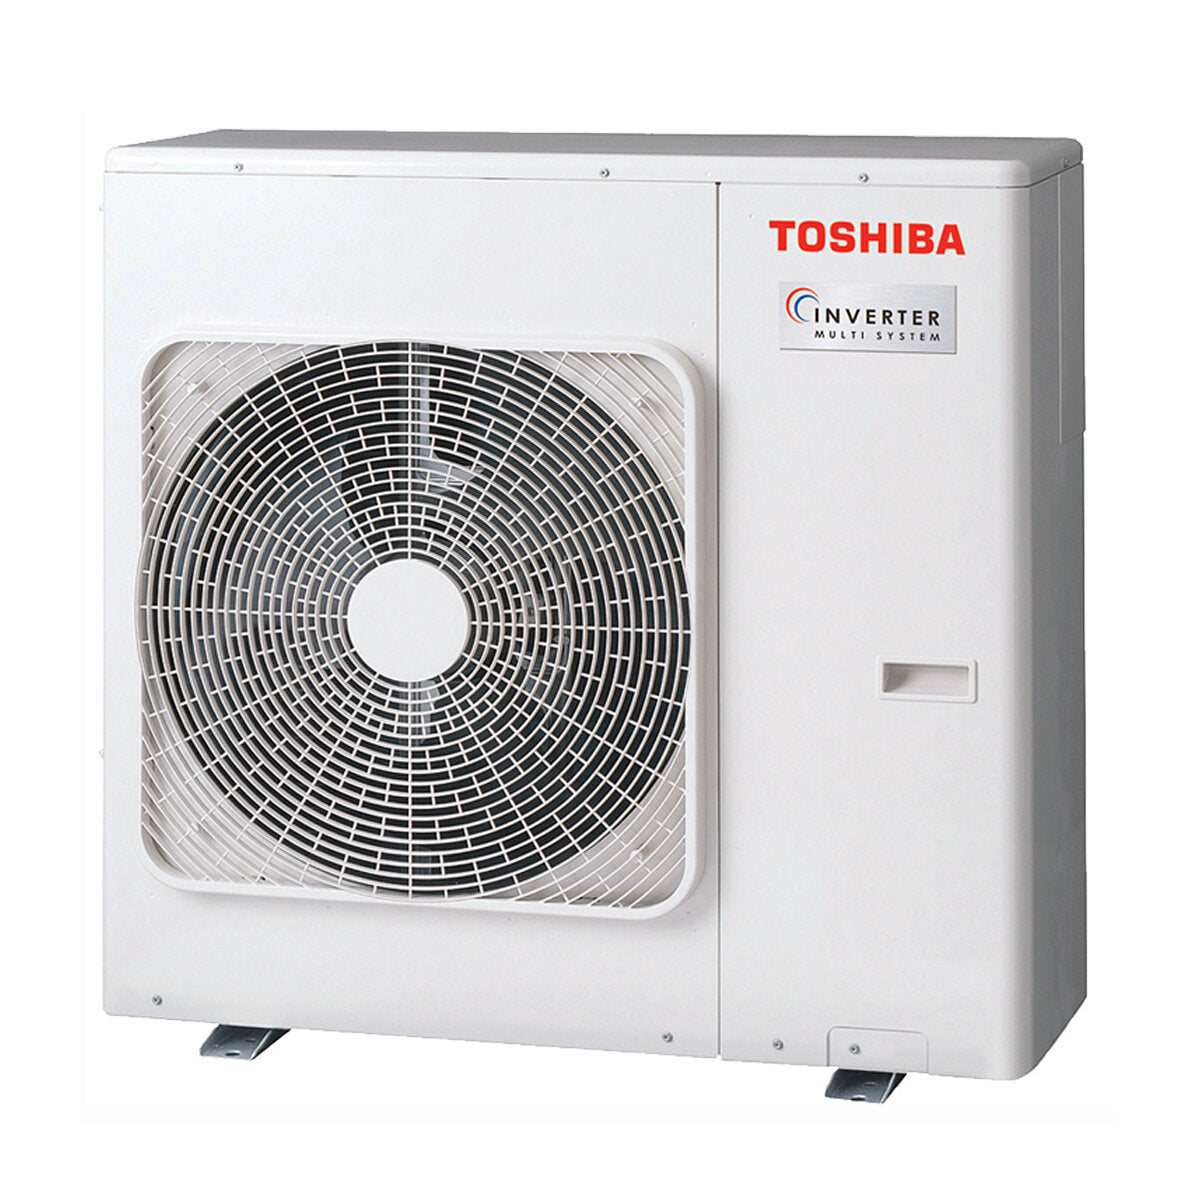 Climatiseur Toshiba Console J2 penta split 9000 + 9000 + 9000 + 12000 + 12000 BTU inverter A++ unité extérieure 10,0 kW